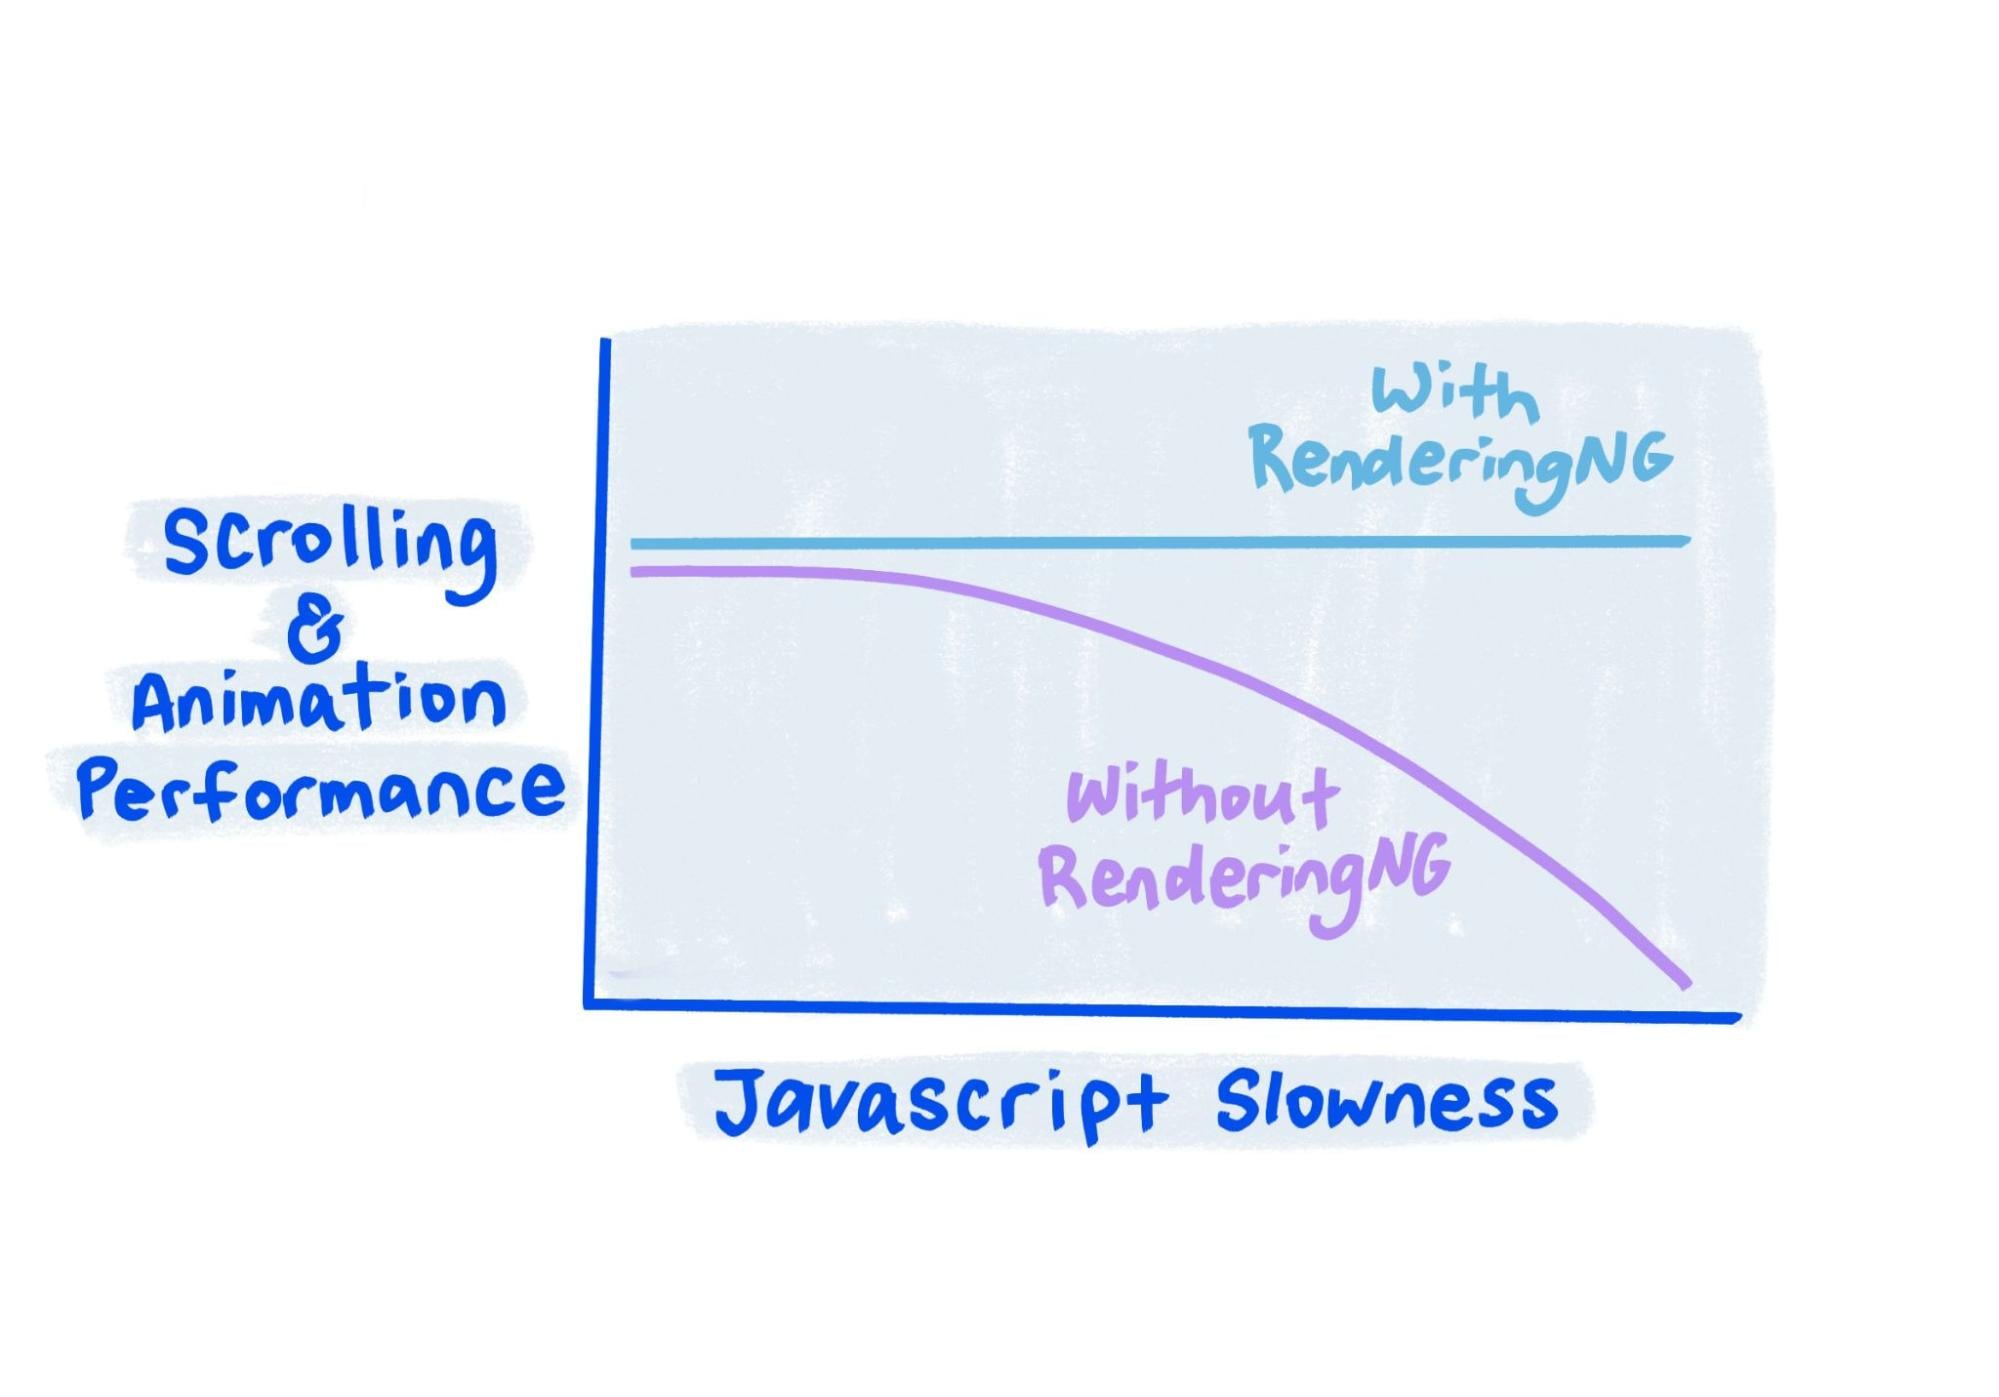 Sketch, JavaScript çok yavaş olduğunda bile RenderingNG performansının sabit kaldığını göstermektedir.